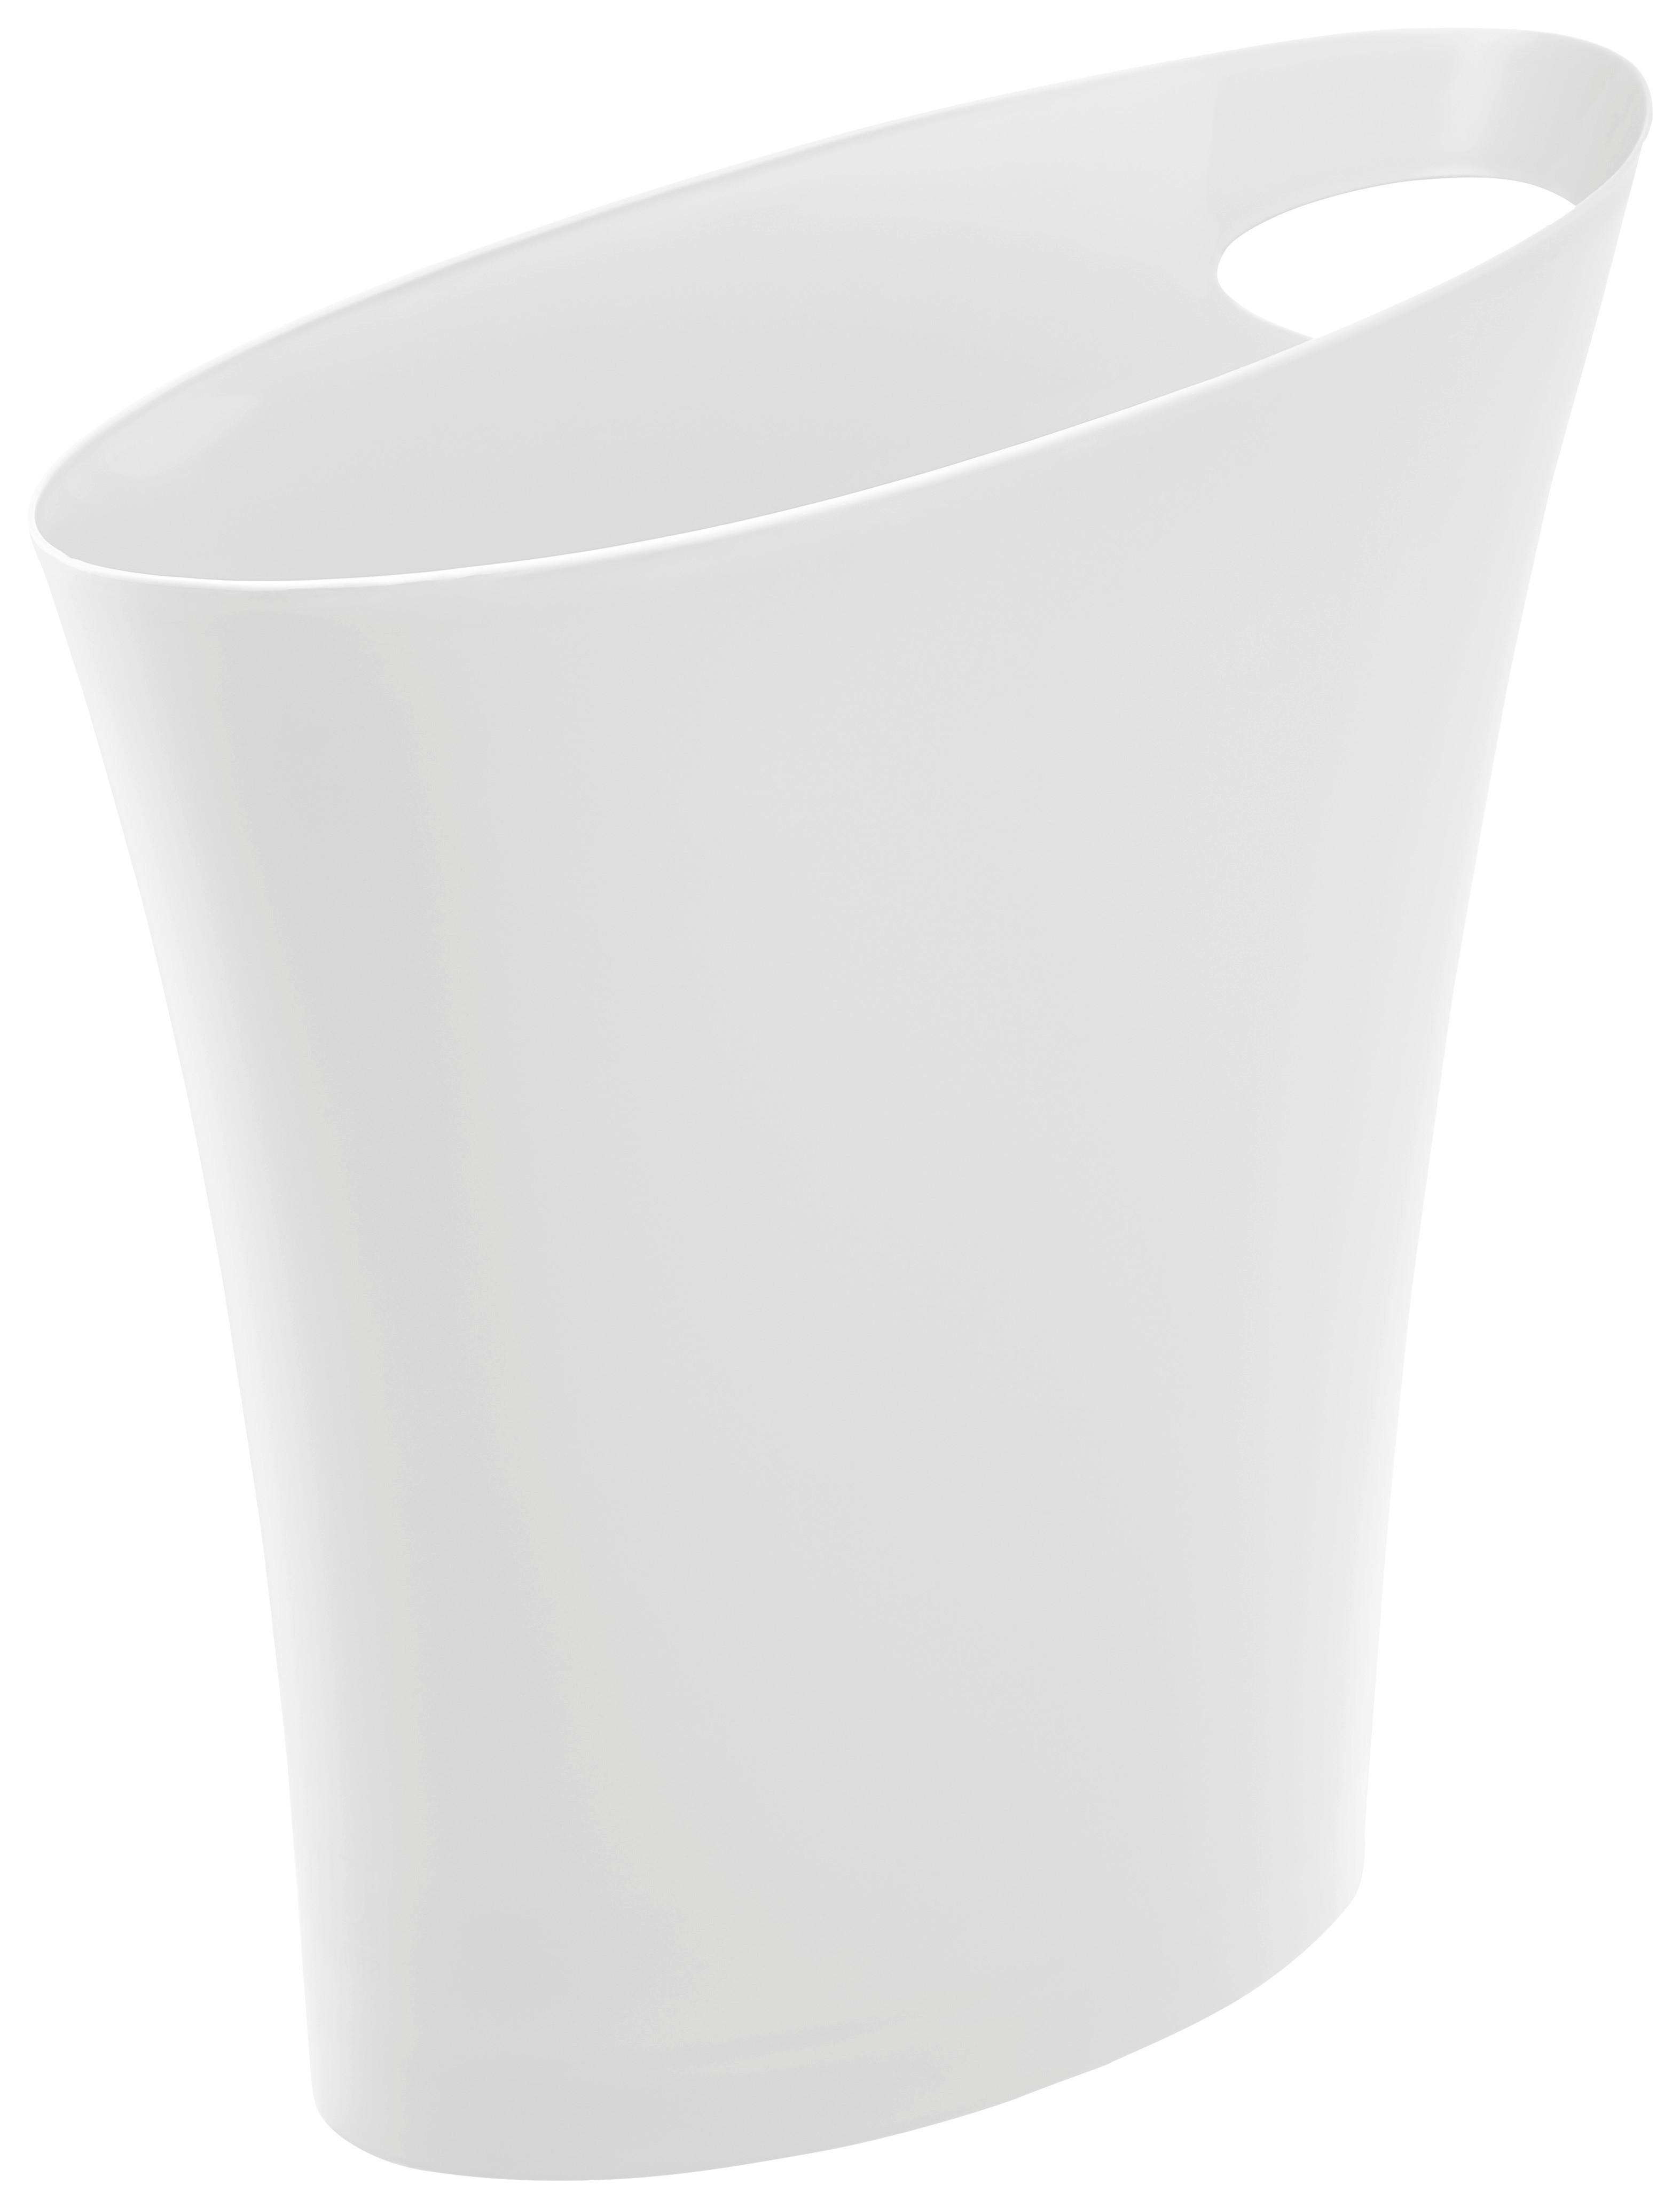 Kosmetikeimer Lilo aus Kunststoff in Weiß - Weiß, MODERN, Kunststoff (34/16/33cm) - Modern Living